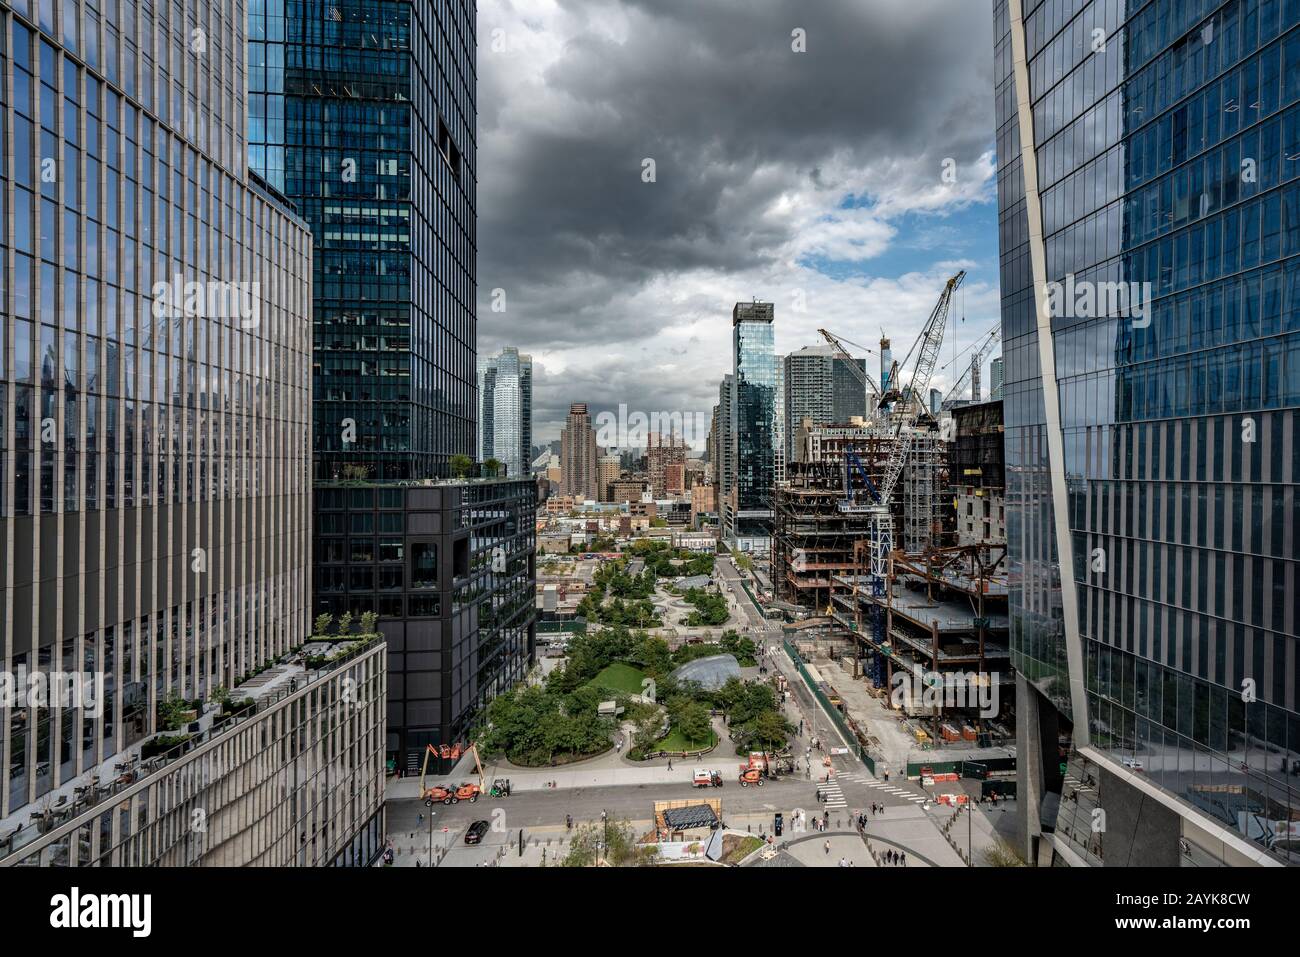 New YORK, USA - 07. OKTOBER: Dies ist ein Luftbild der Wolkenkratzer an der Entwicklung der Hudson Yards in Manhattan am 07. Oktober 2019 in New York Stockfoto